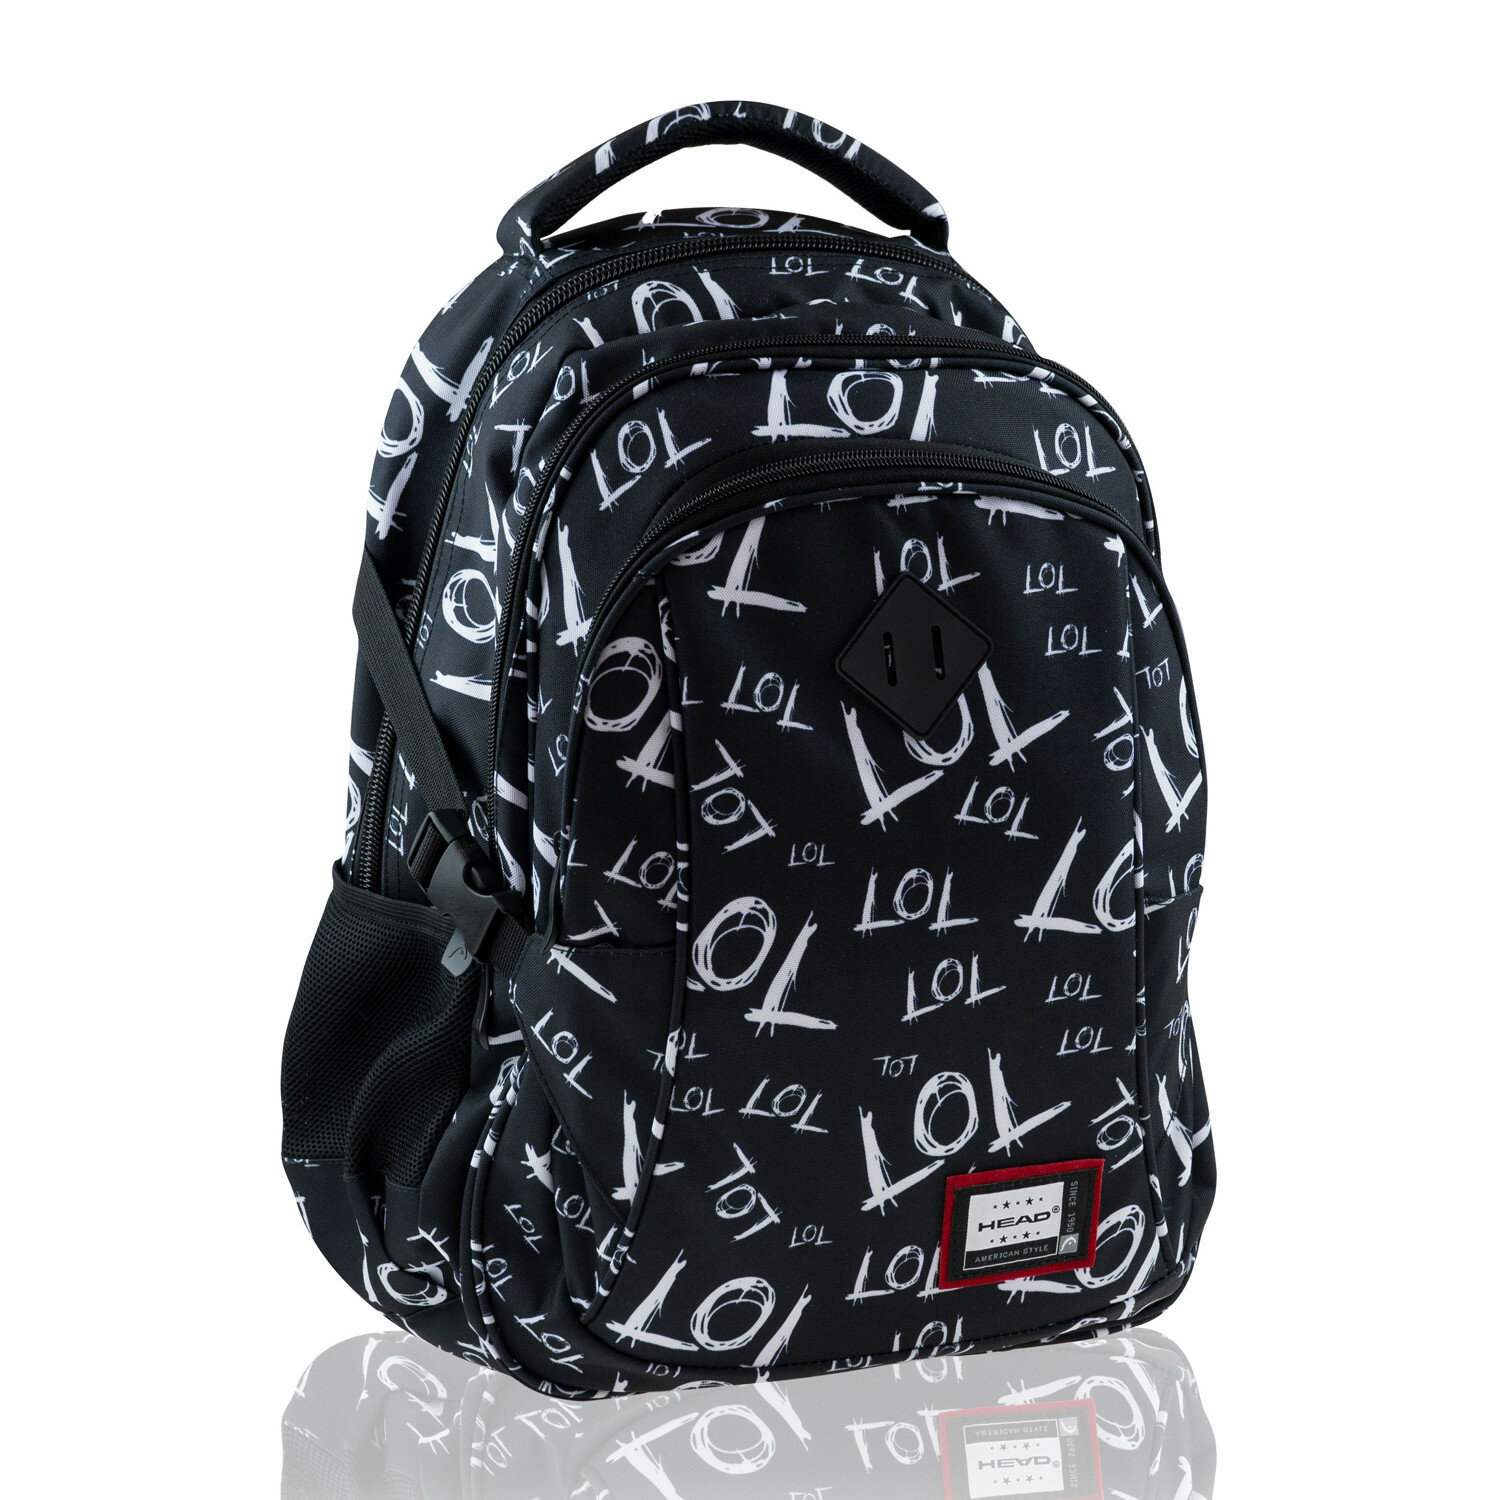 Рюкзак HEAD, модель LOL, цвет: черный/белый 502020104